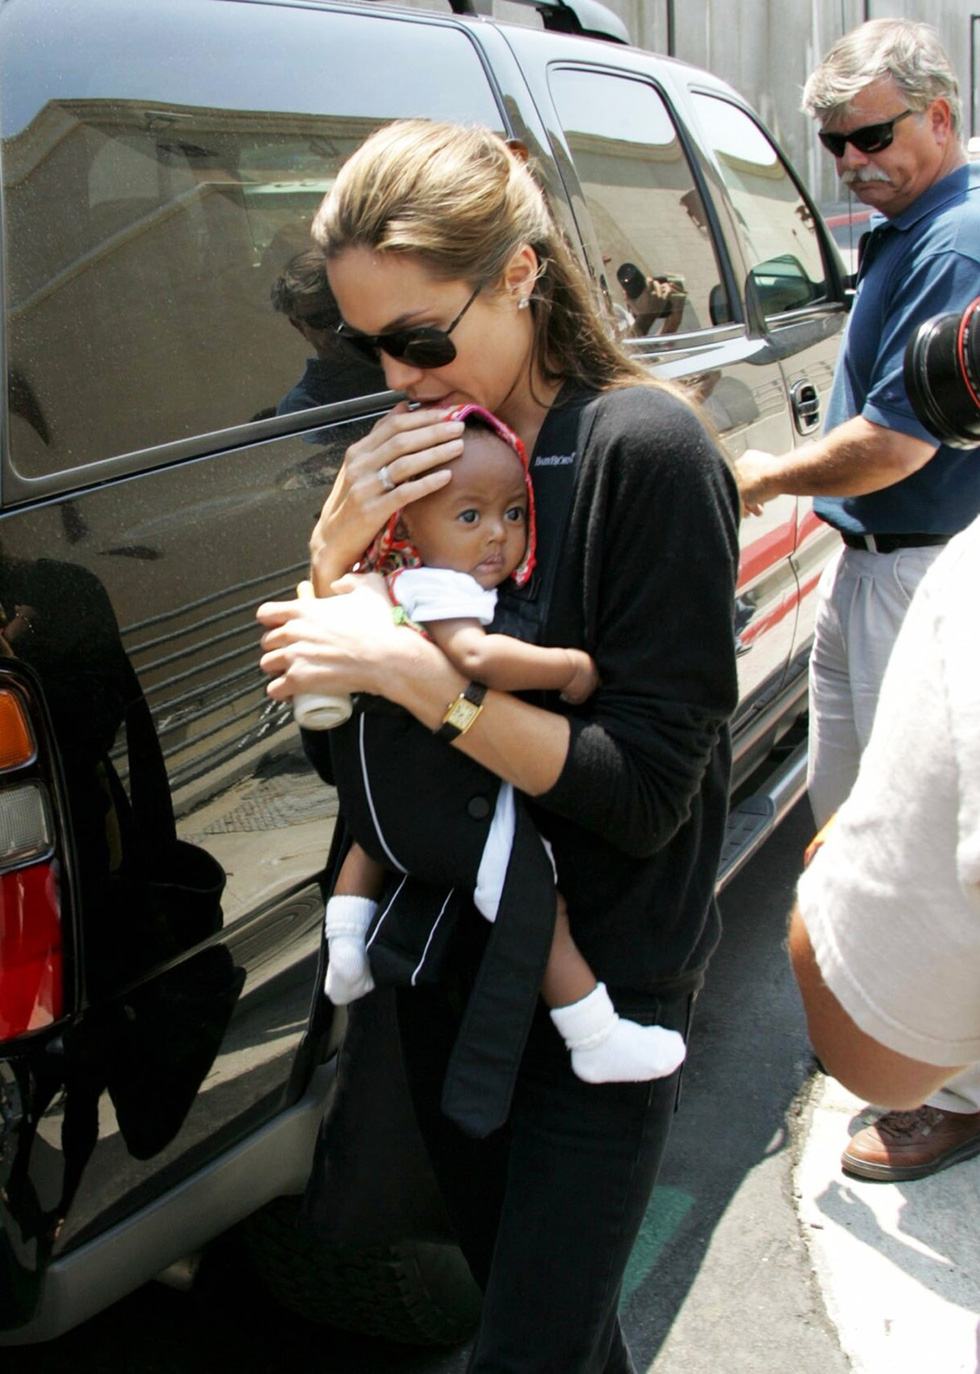 Nhật ký những chuyến đi của Angelina Jolie: Hành trình của một người từ ái - Ảnh 3.